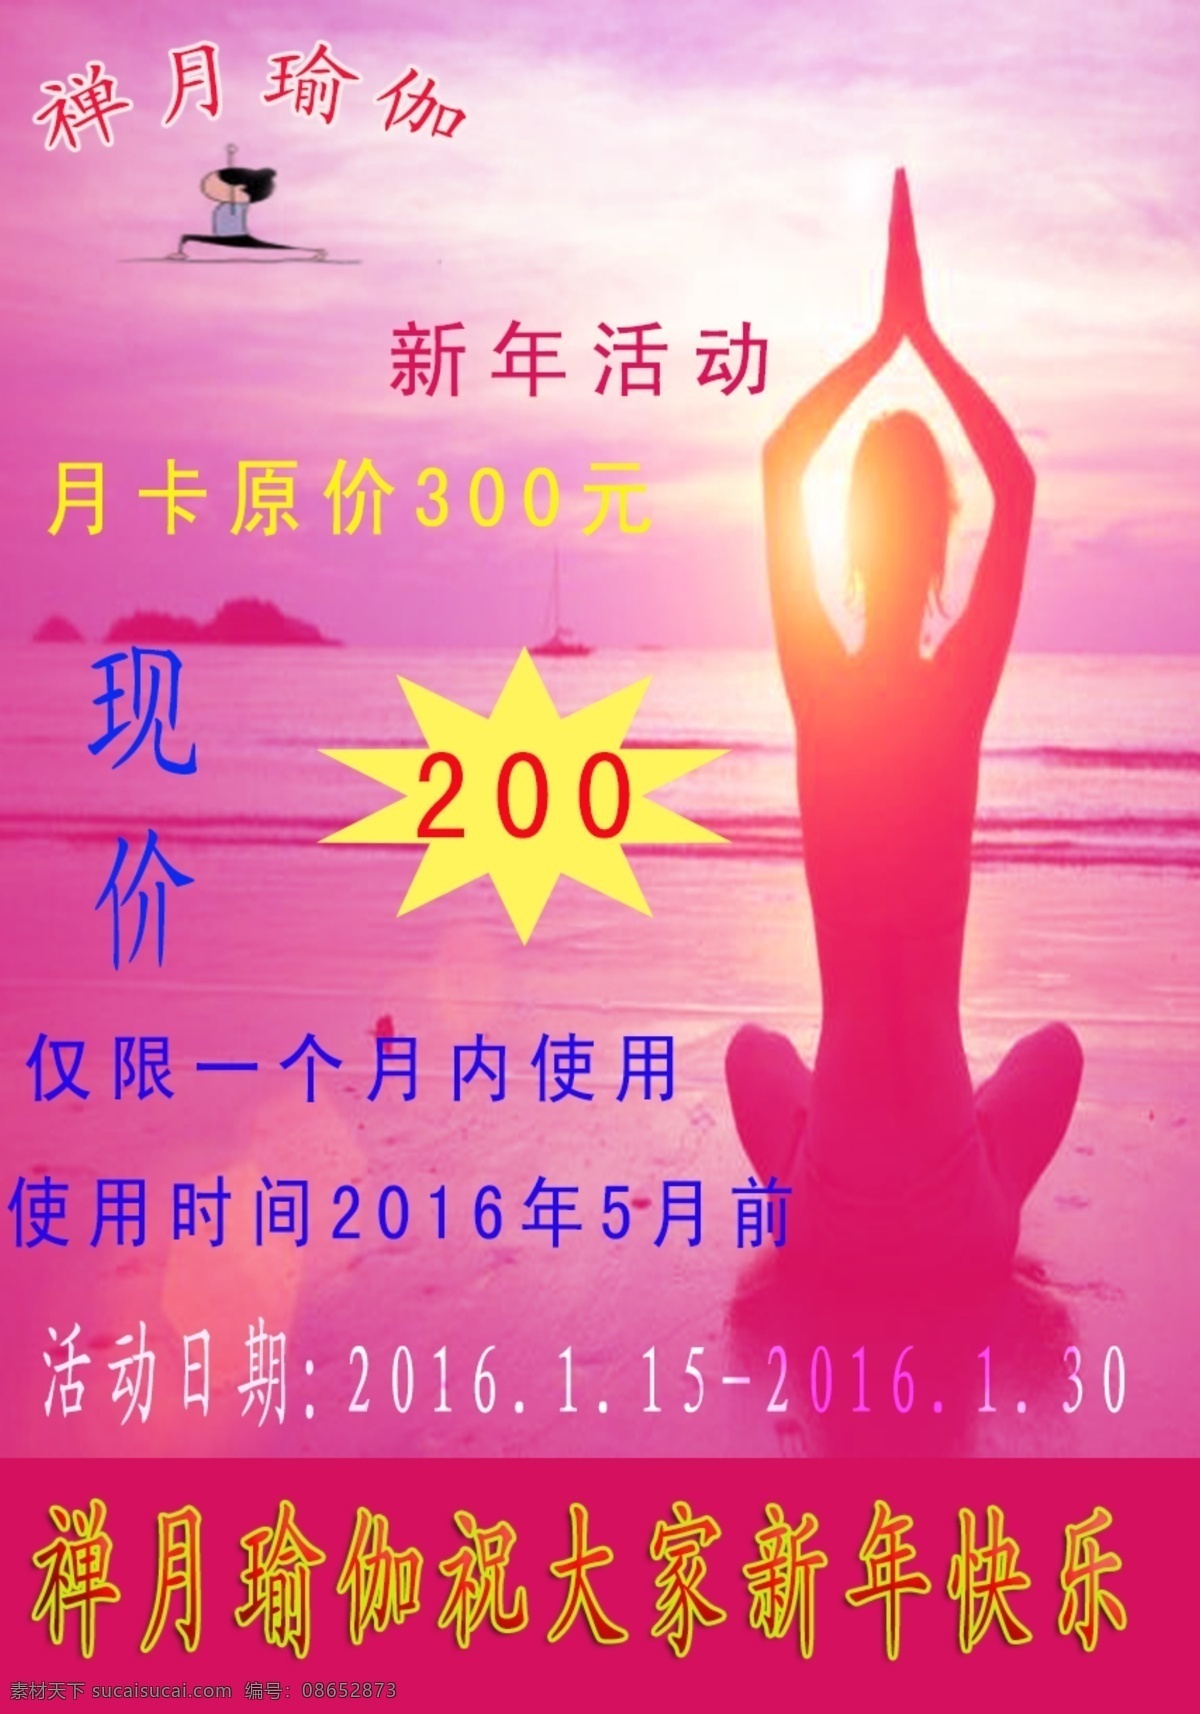 瑜伽新年活动 瑜伽 宣传页 宣传海报 瑜伽月卡 特价